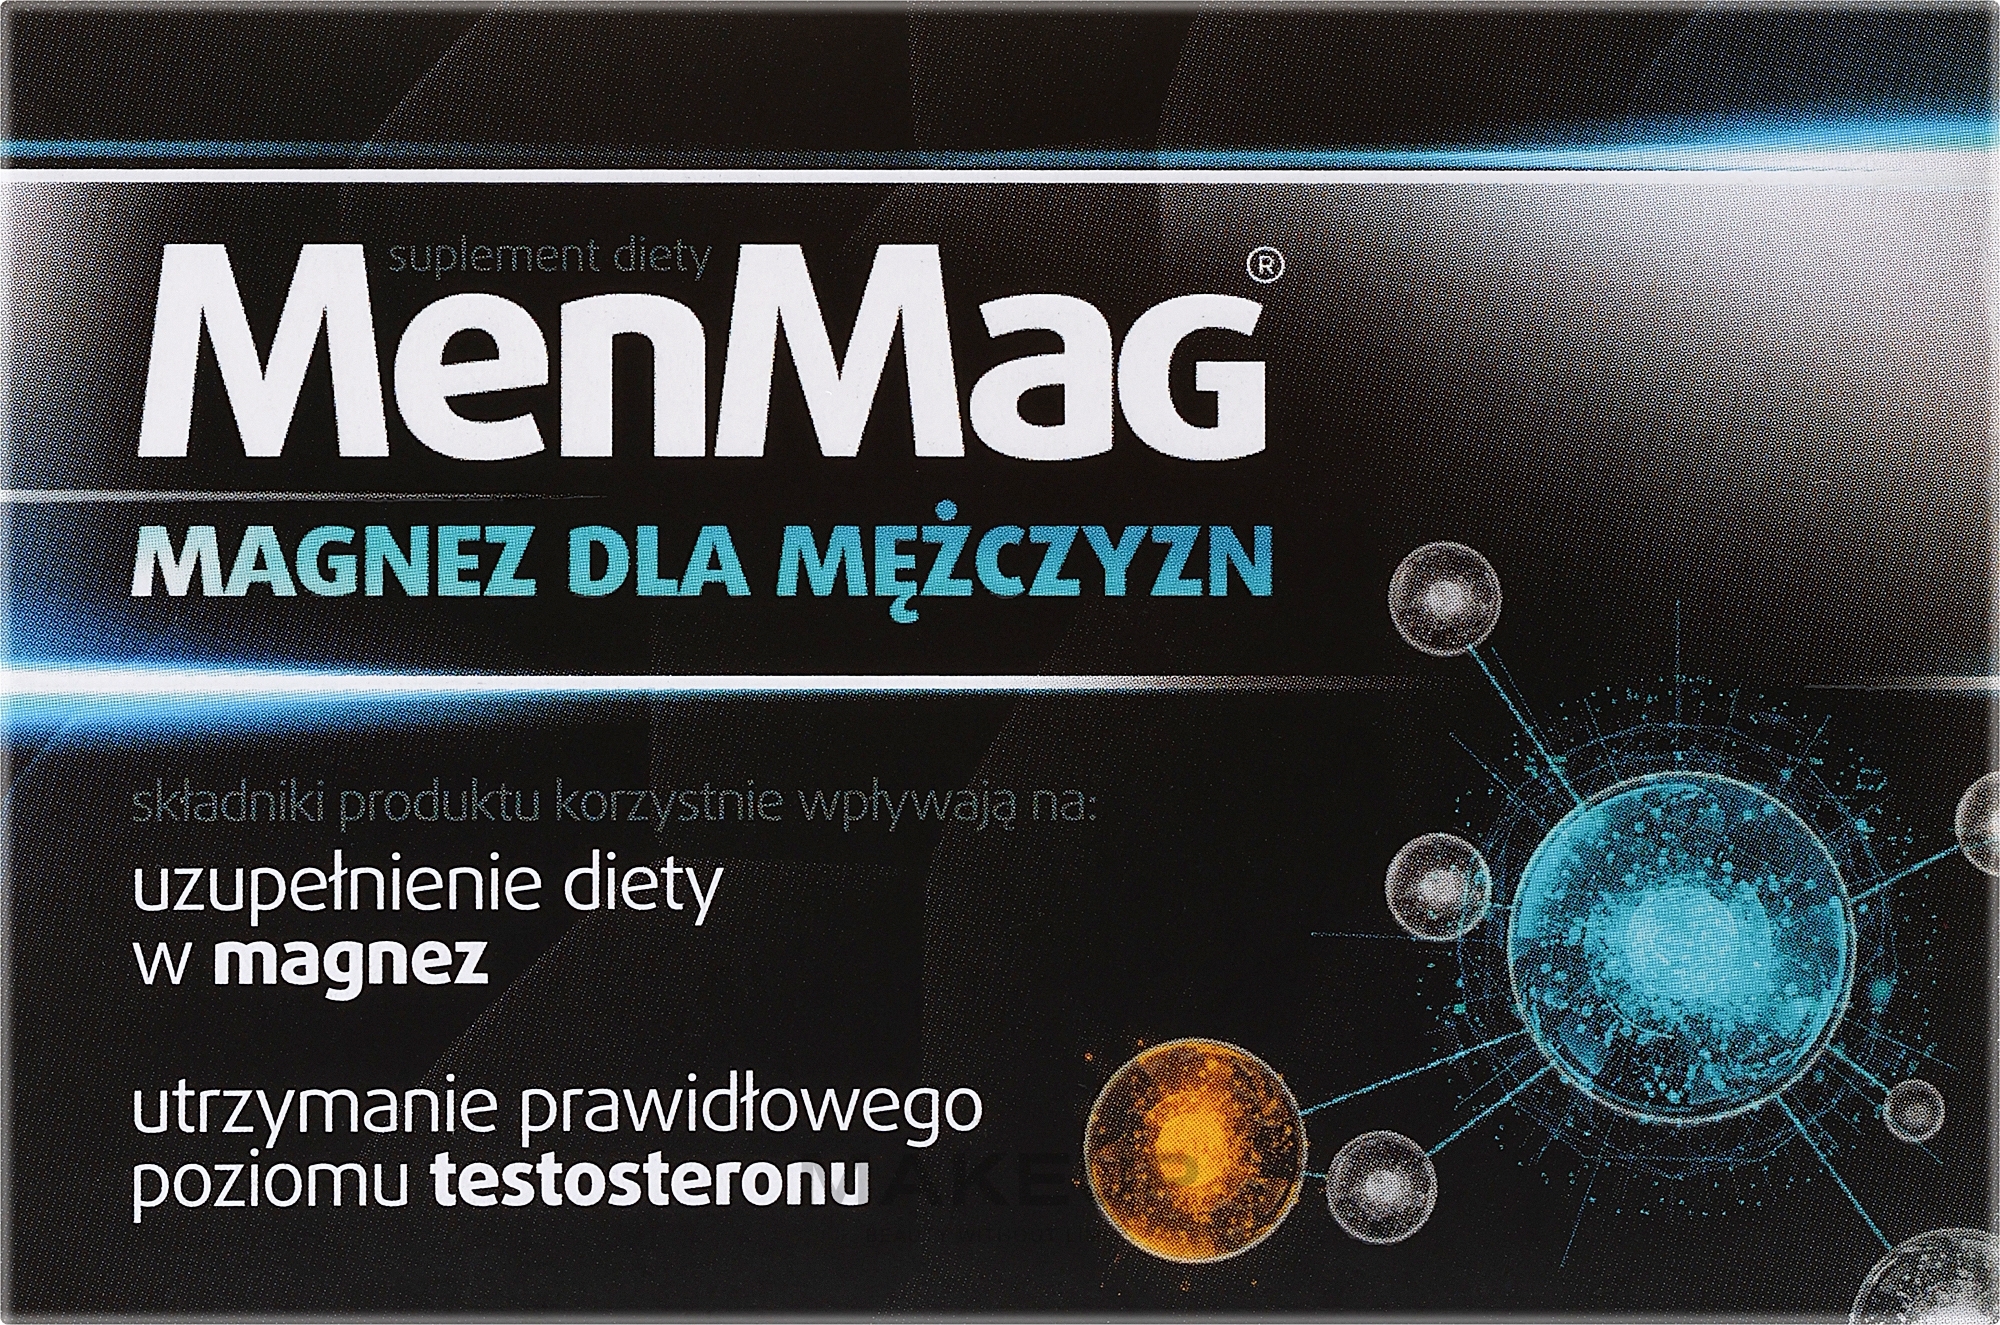 Suplement diety dla mężczyzn w tabletkach uzupełniający dietę w magnez - Aflofarm MenMag — Zdjęcie 30 szt.